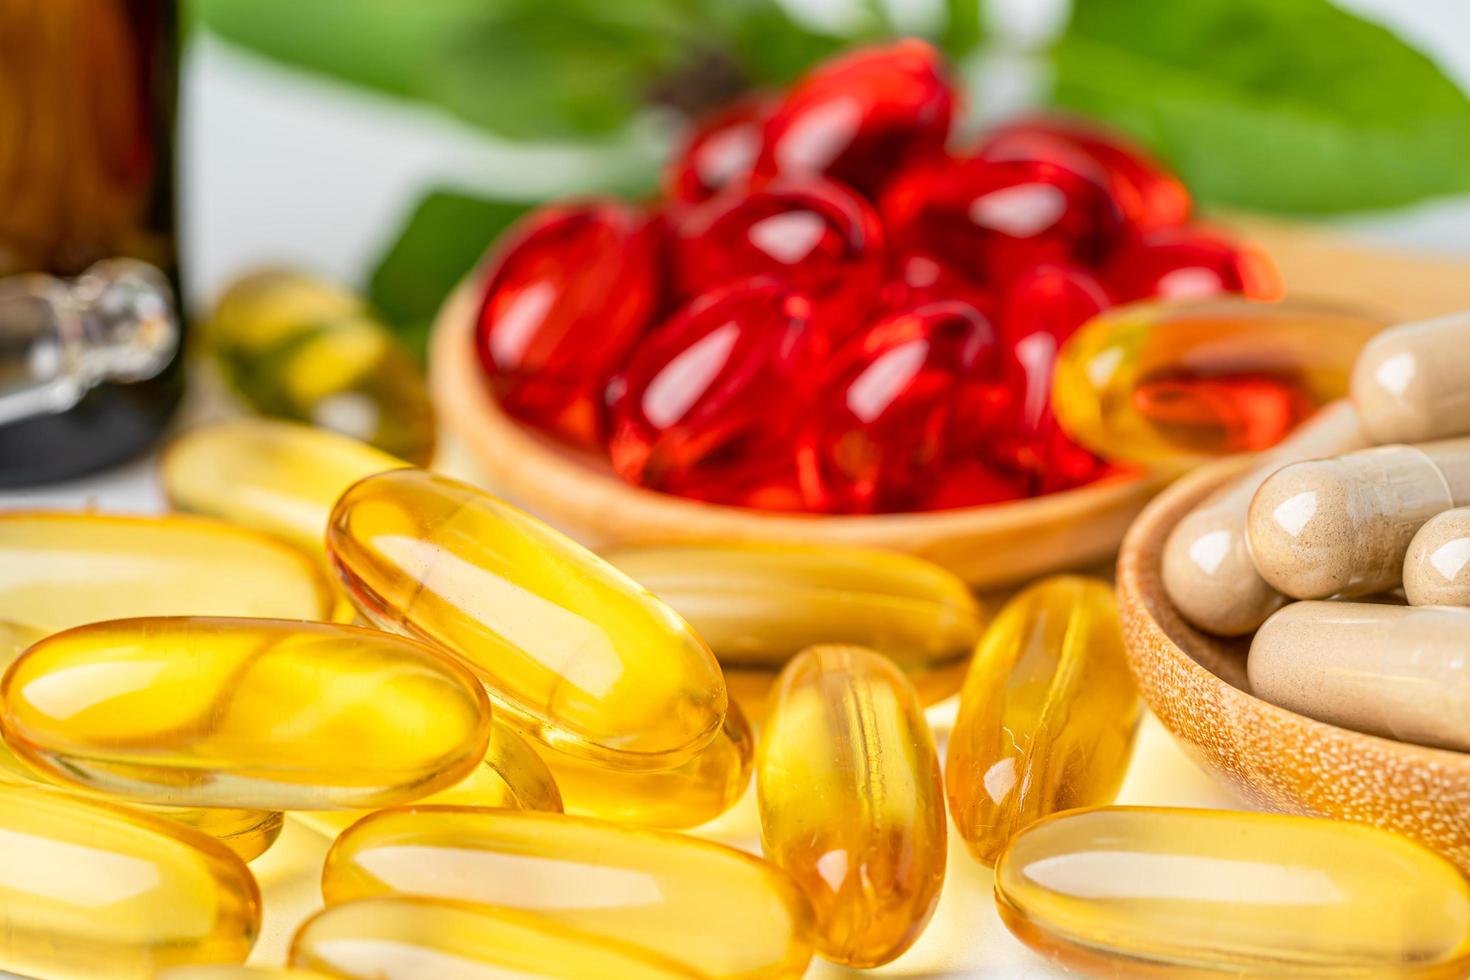 Cila vitaminë E kuqe dhe e verdhë është më e mirë?  Për thelbin brenda